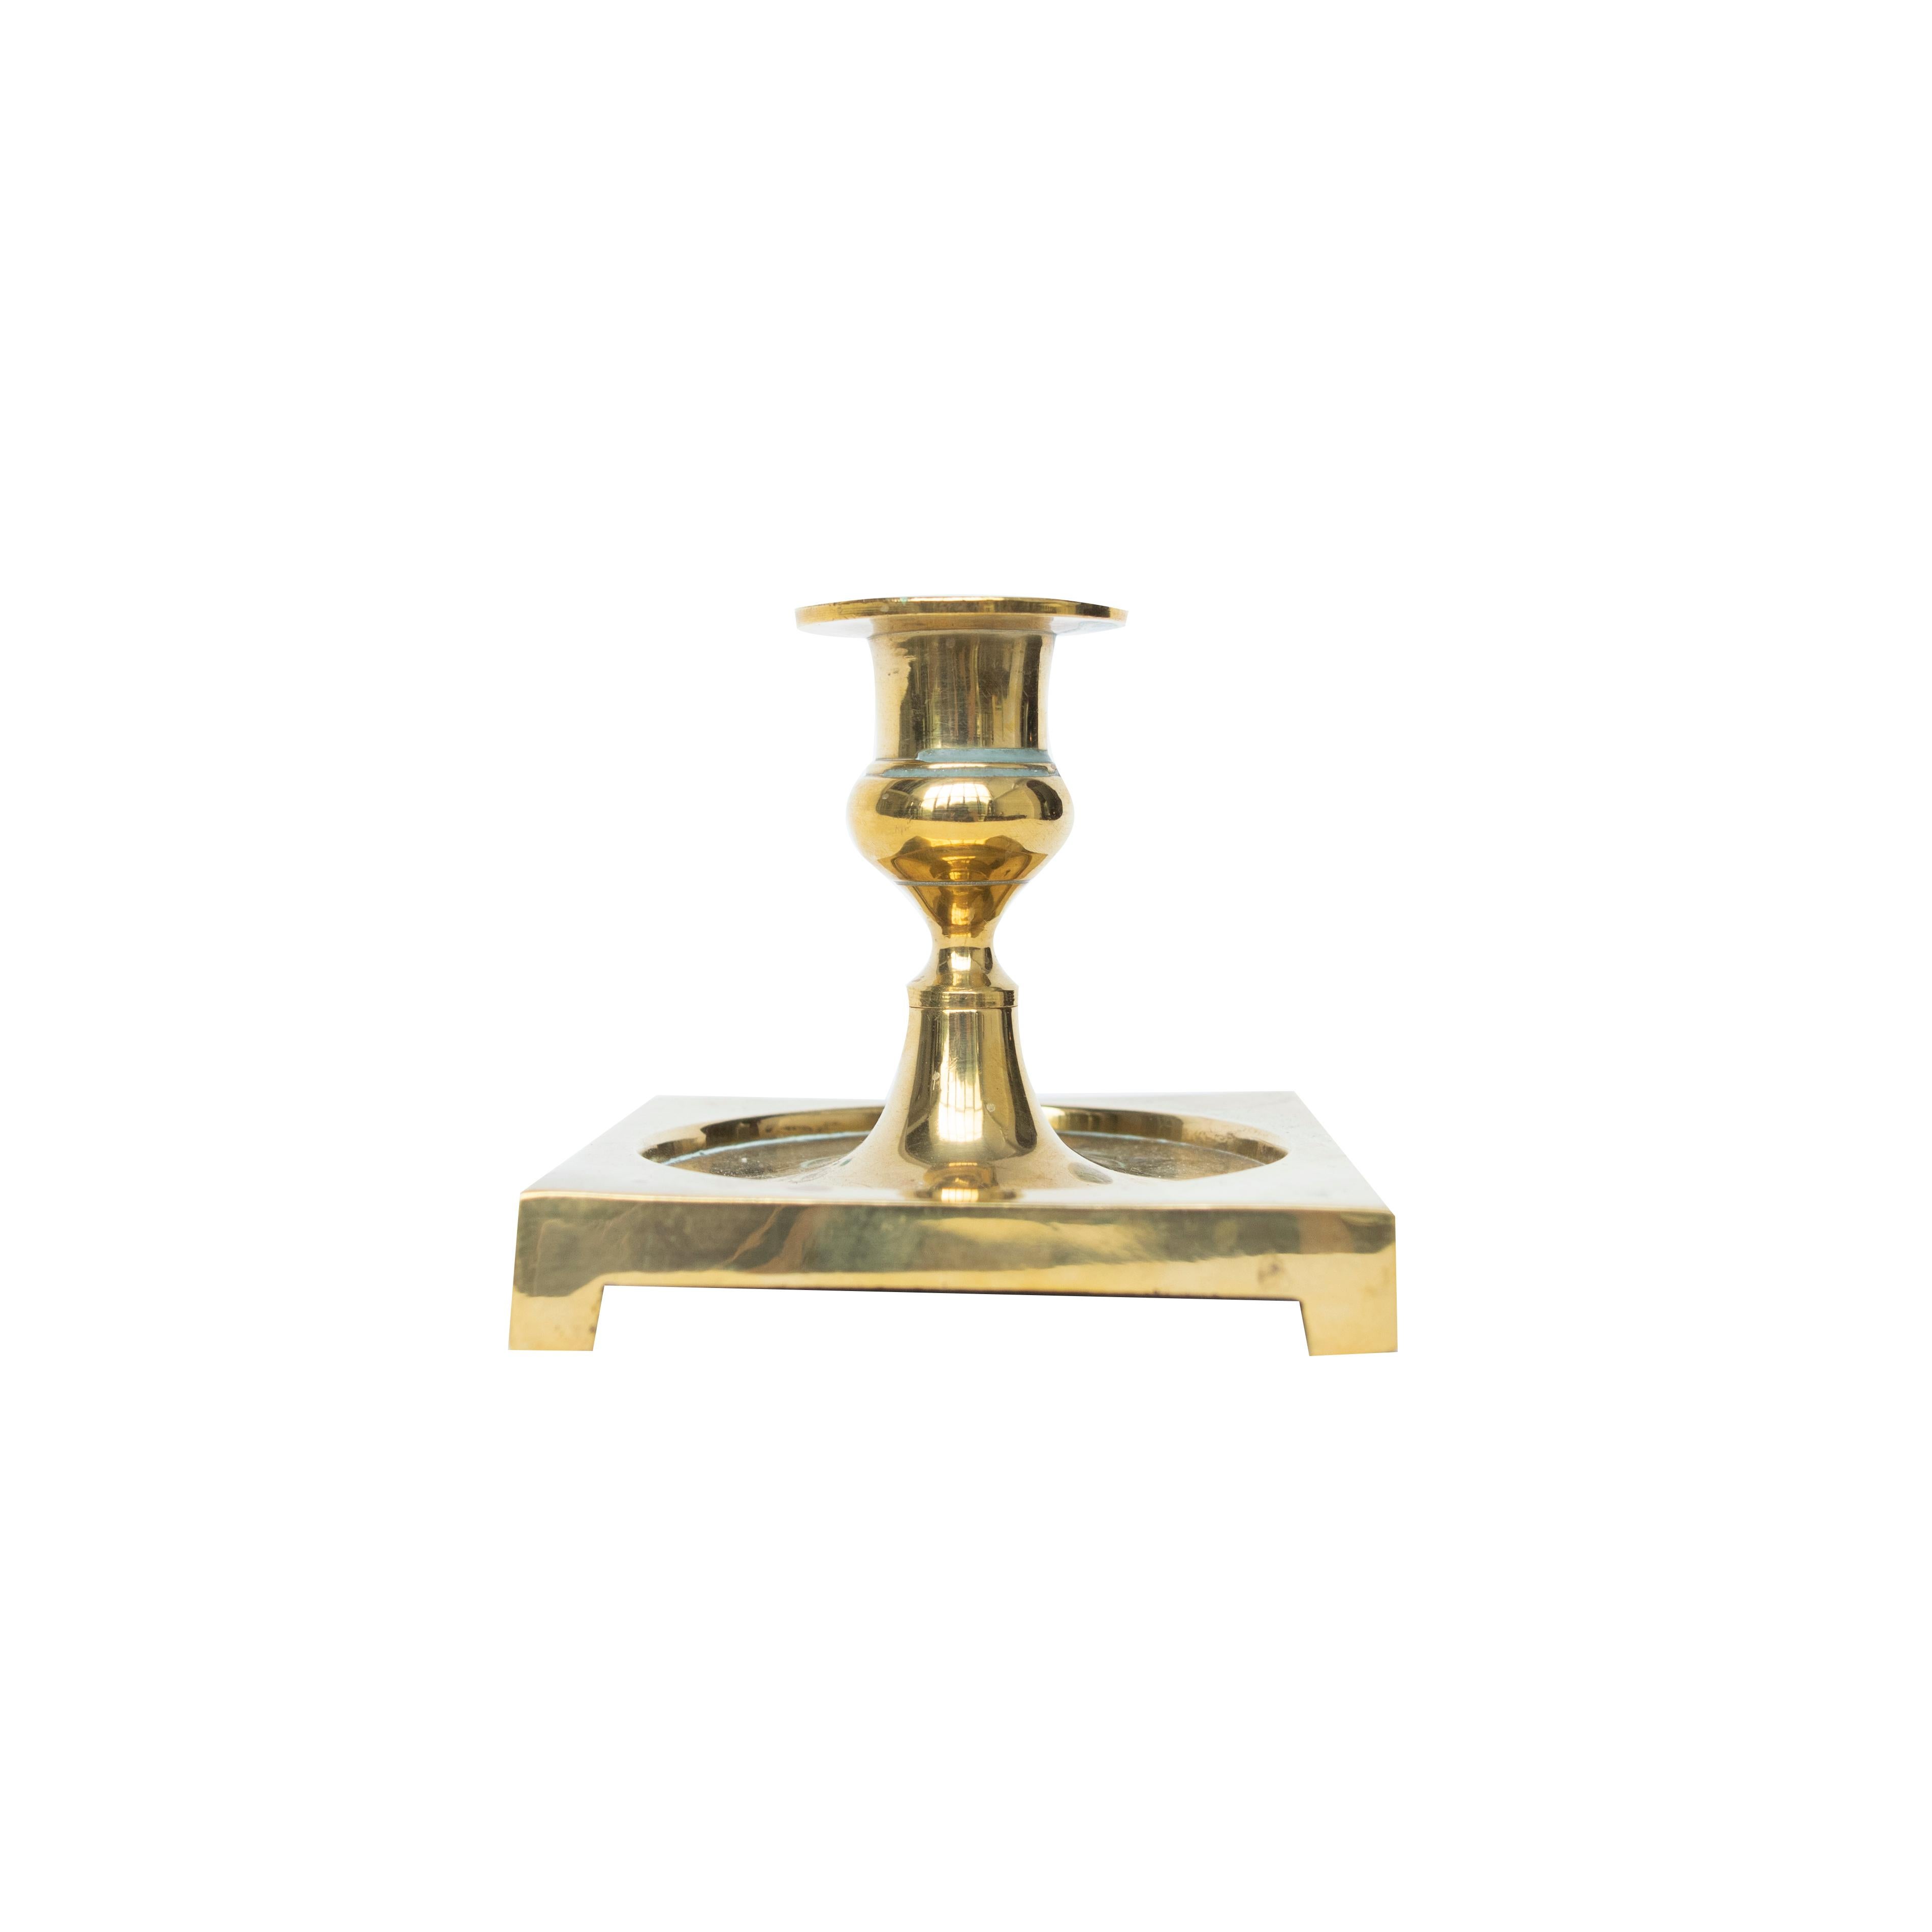 Jugendstil Antique Brass Candleholder from Sweden, Early 1900s For Sale